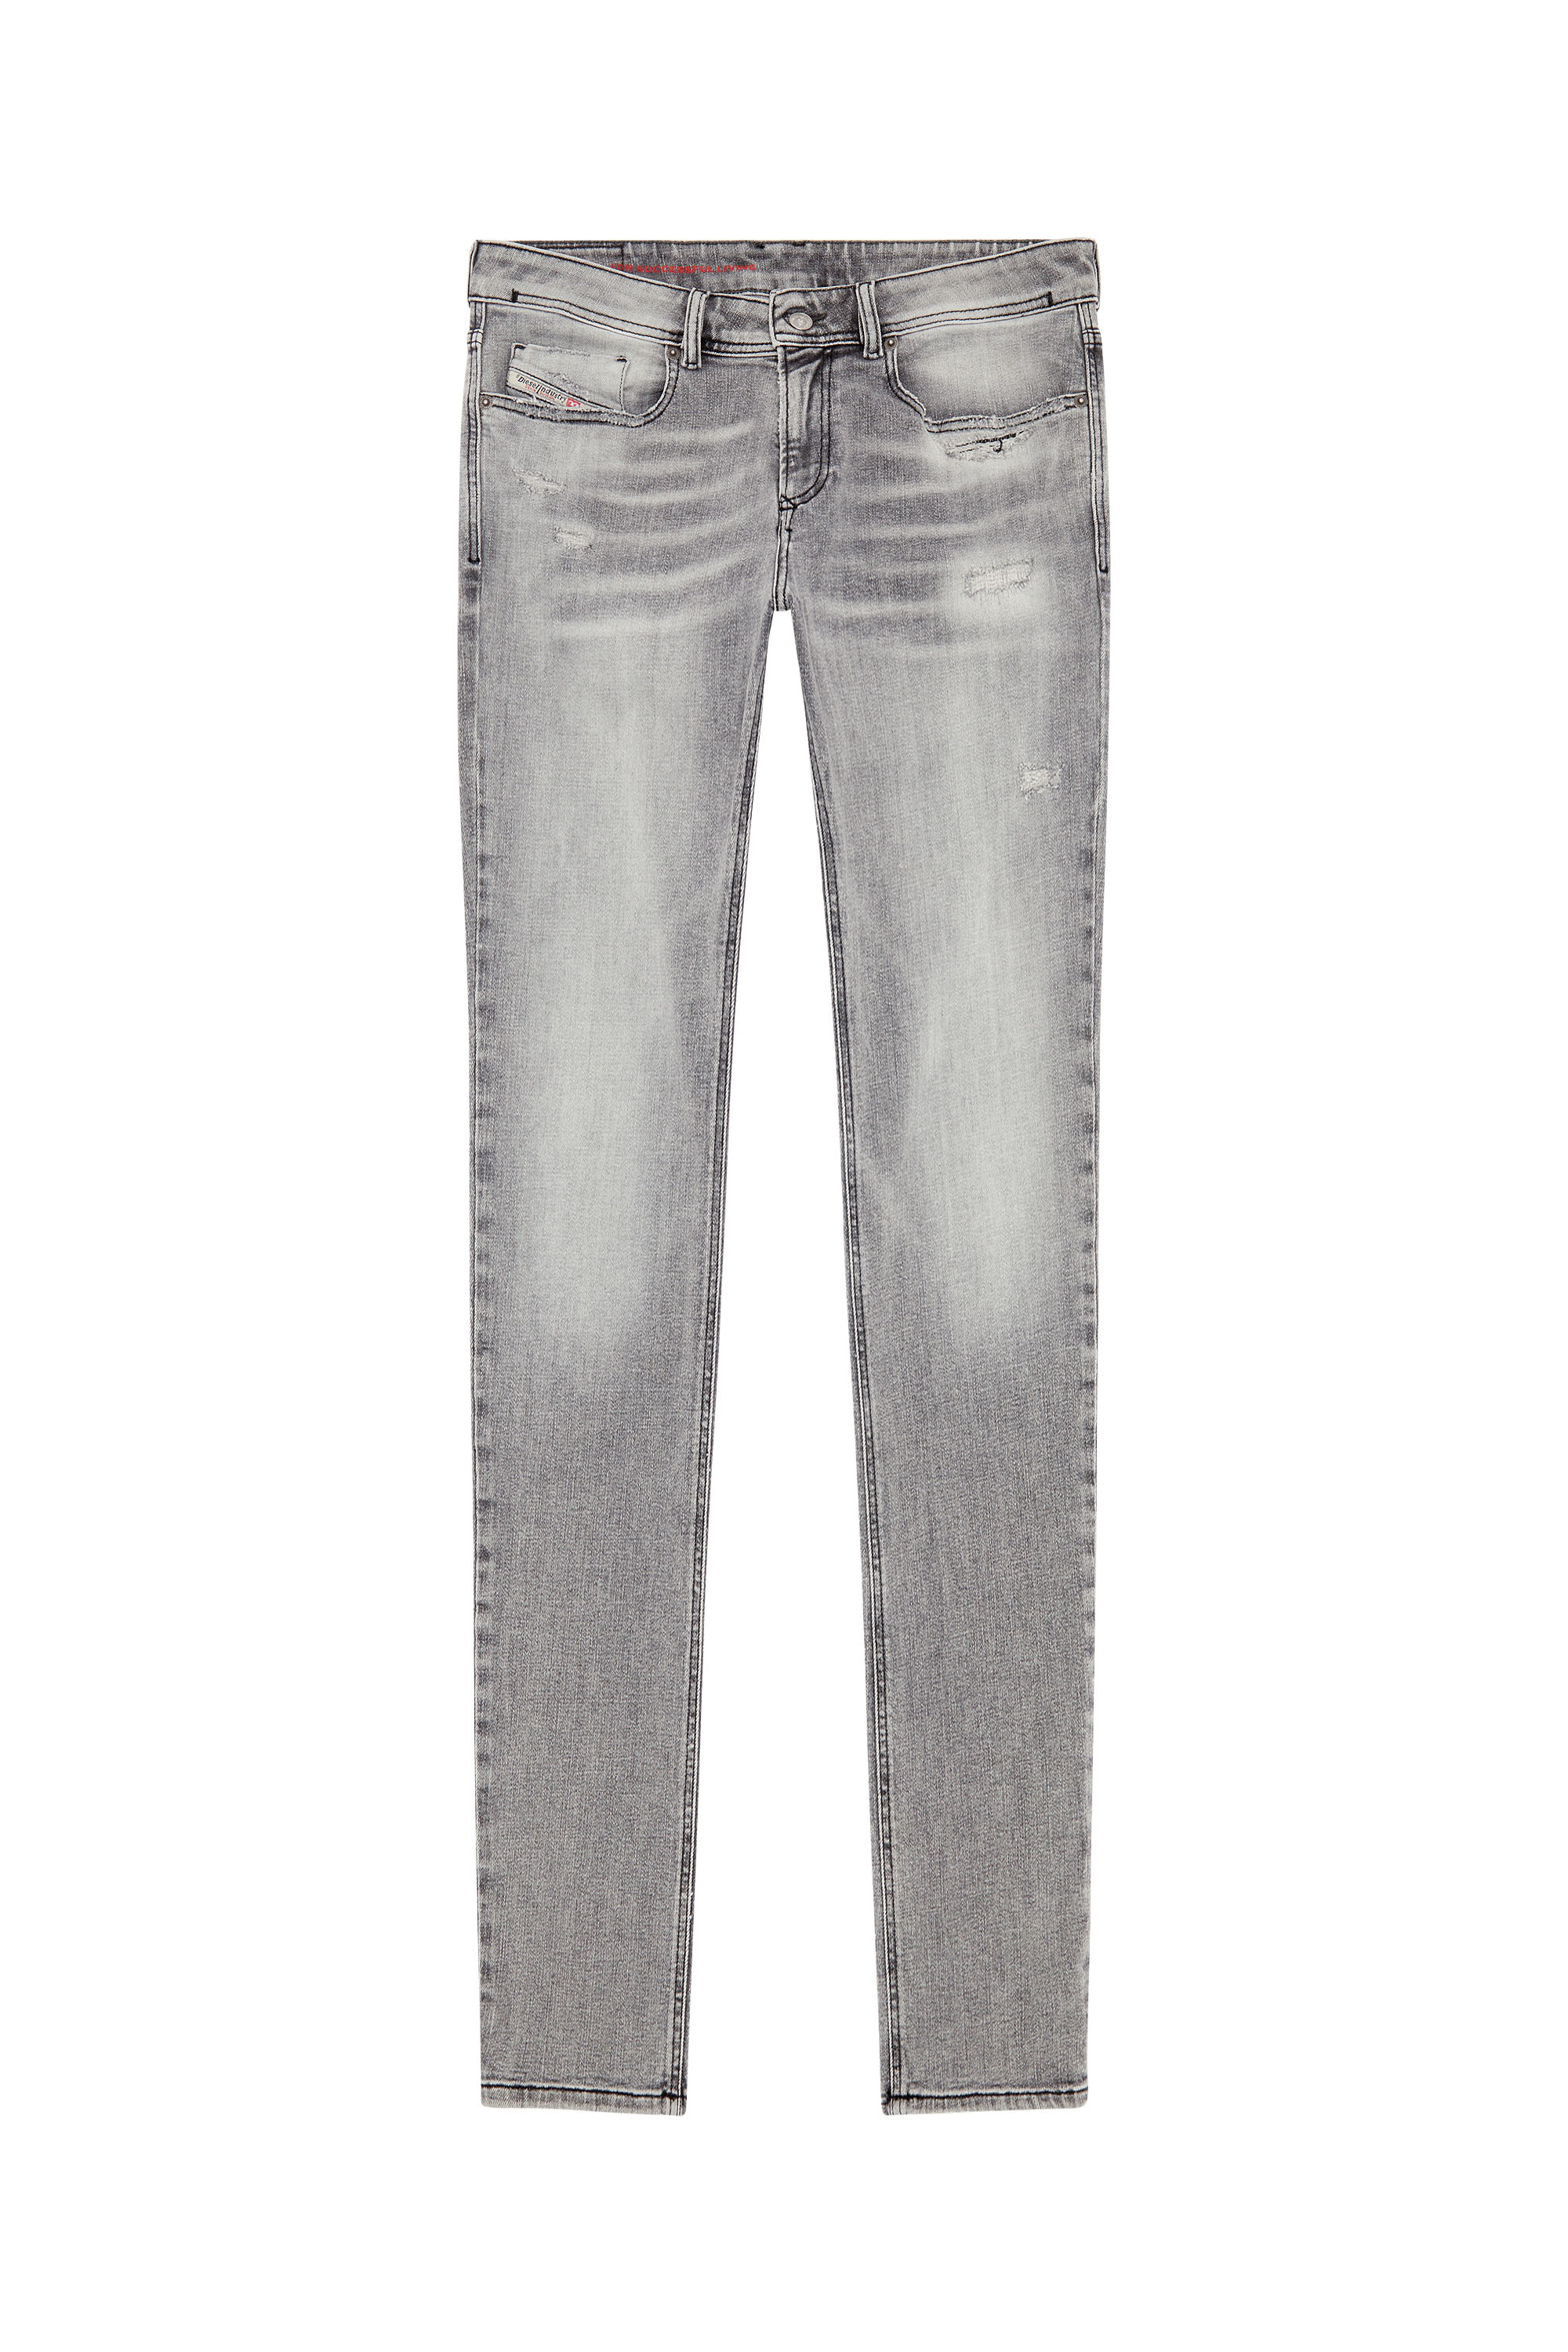 Diesel - Man Skinny Jeans 1979 Sleenker E9B97, Black/Dark grey - Image 5